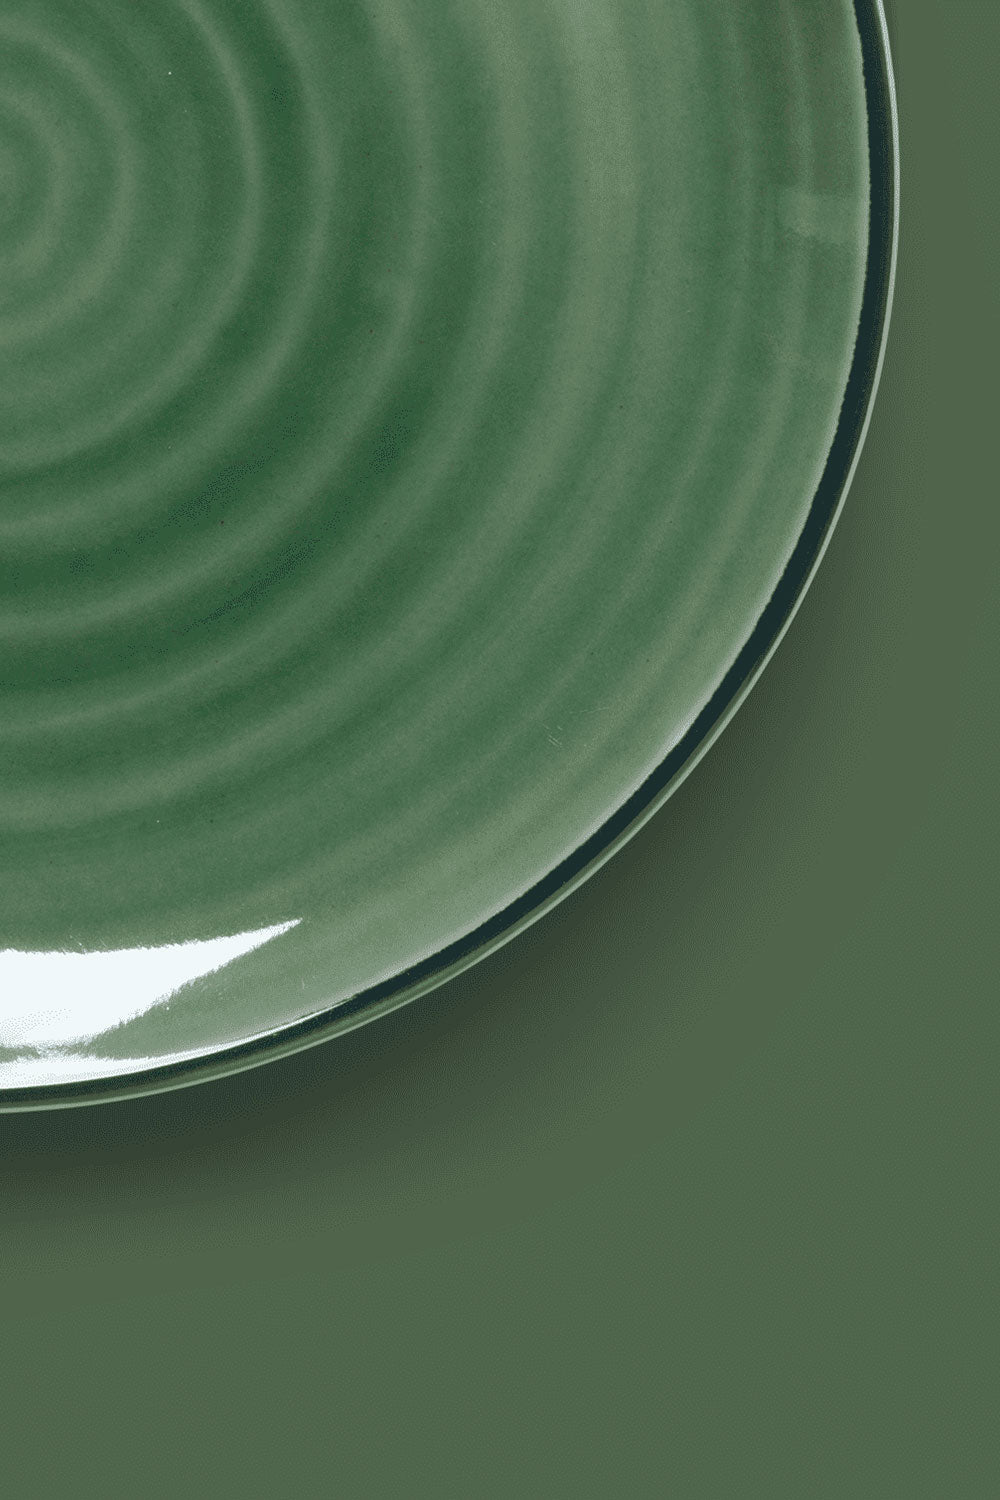 Color Dessert Plate, 19 cm - Maison7